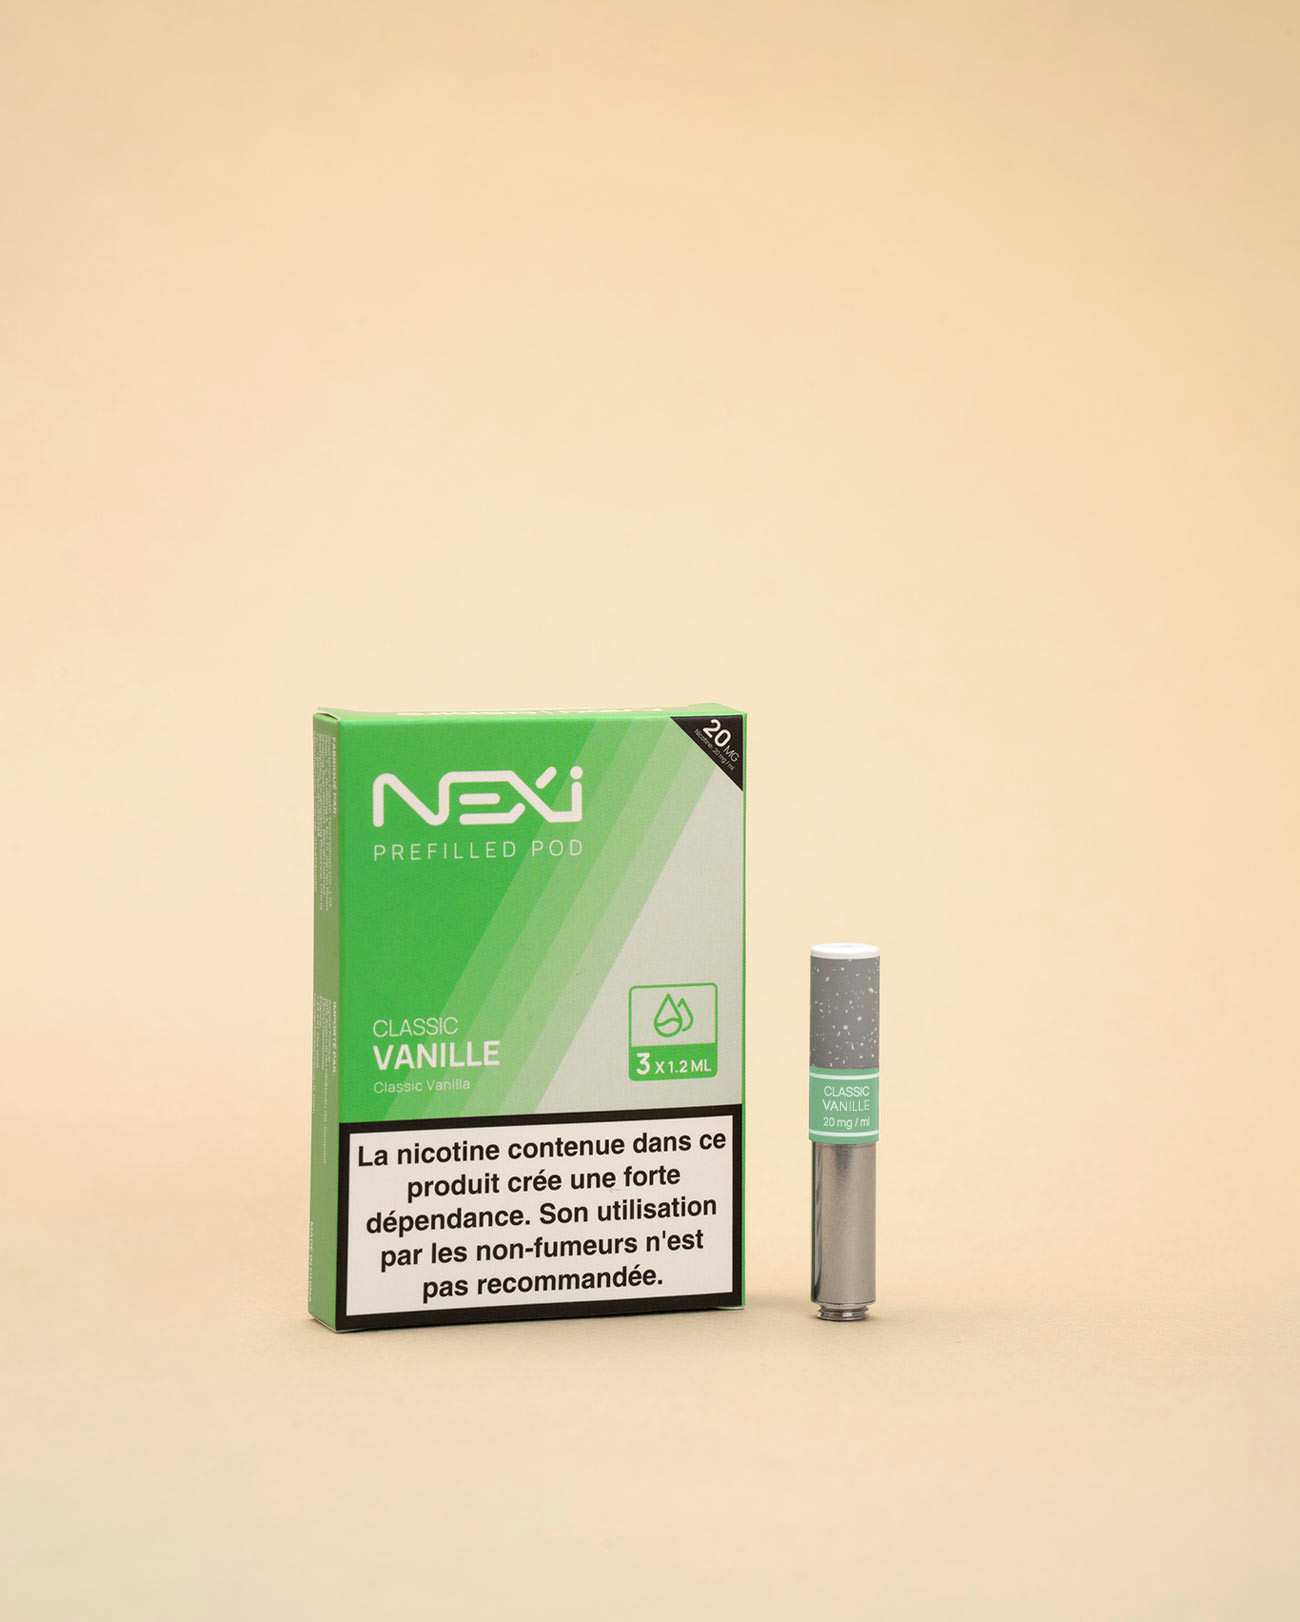 Nexi One cartouche Classic Vanille tirage comme une cigarette tabagique